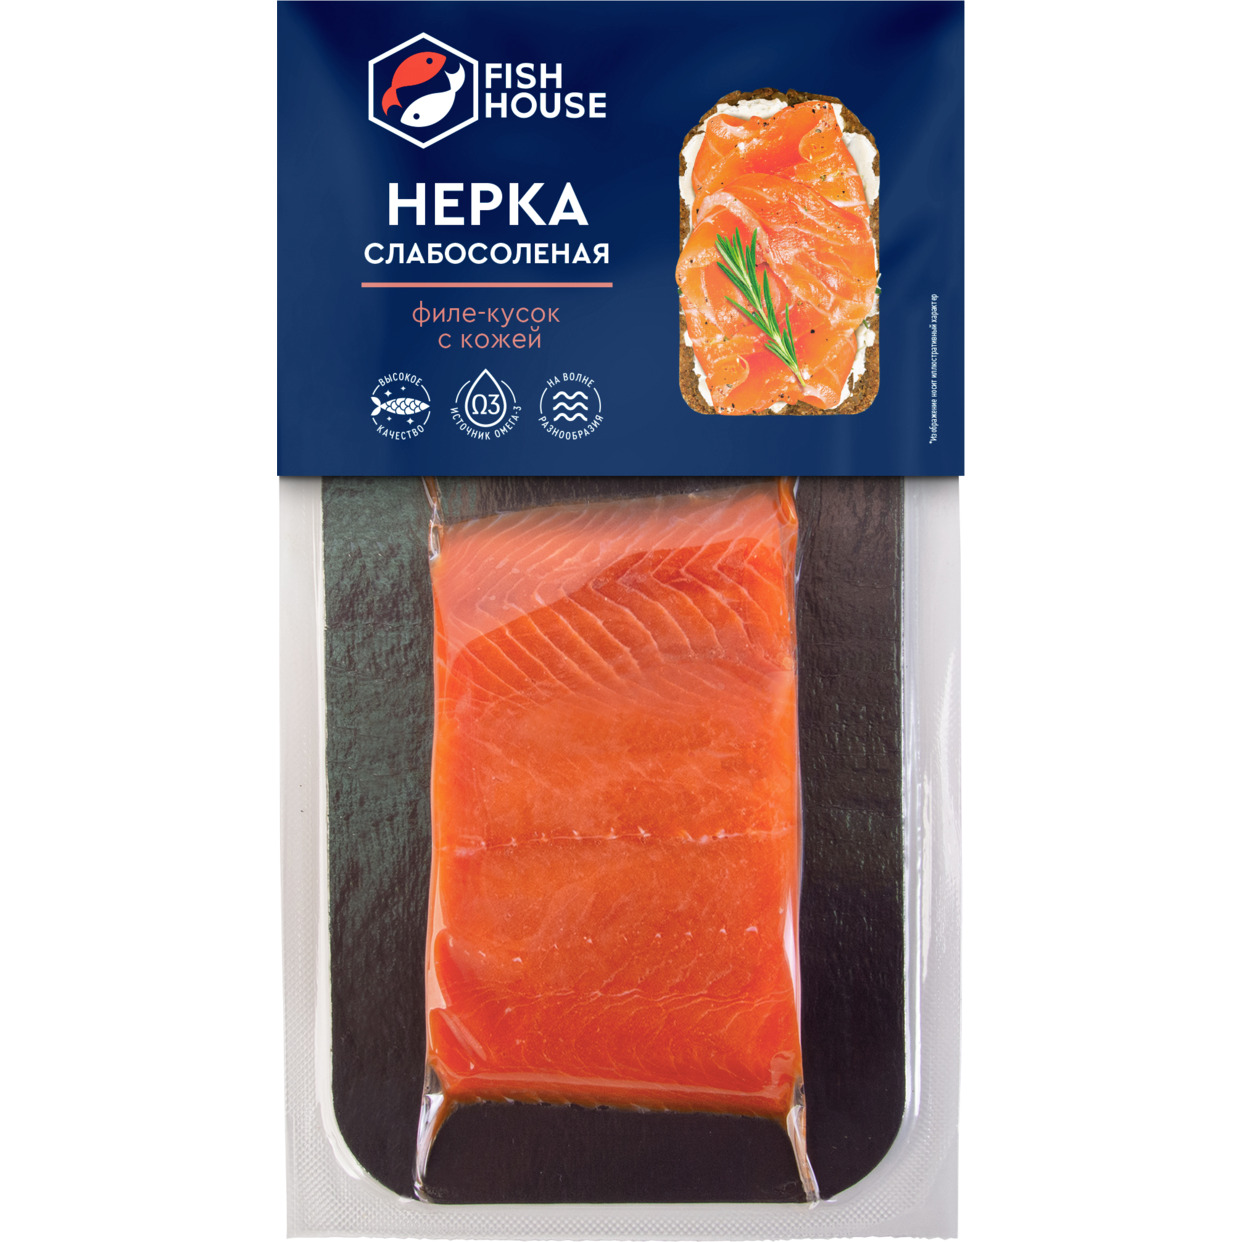 Соленая пищевая рыбная продукция нерка филе-кусок слабосоленая 150г по акции в Пятерочке